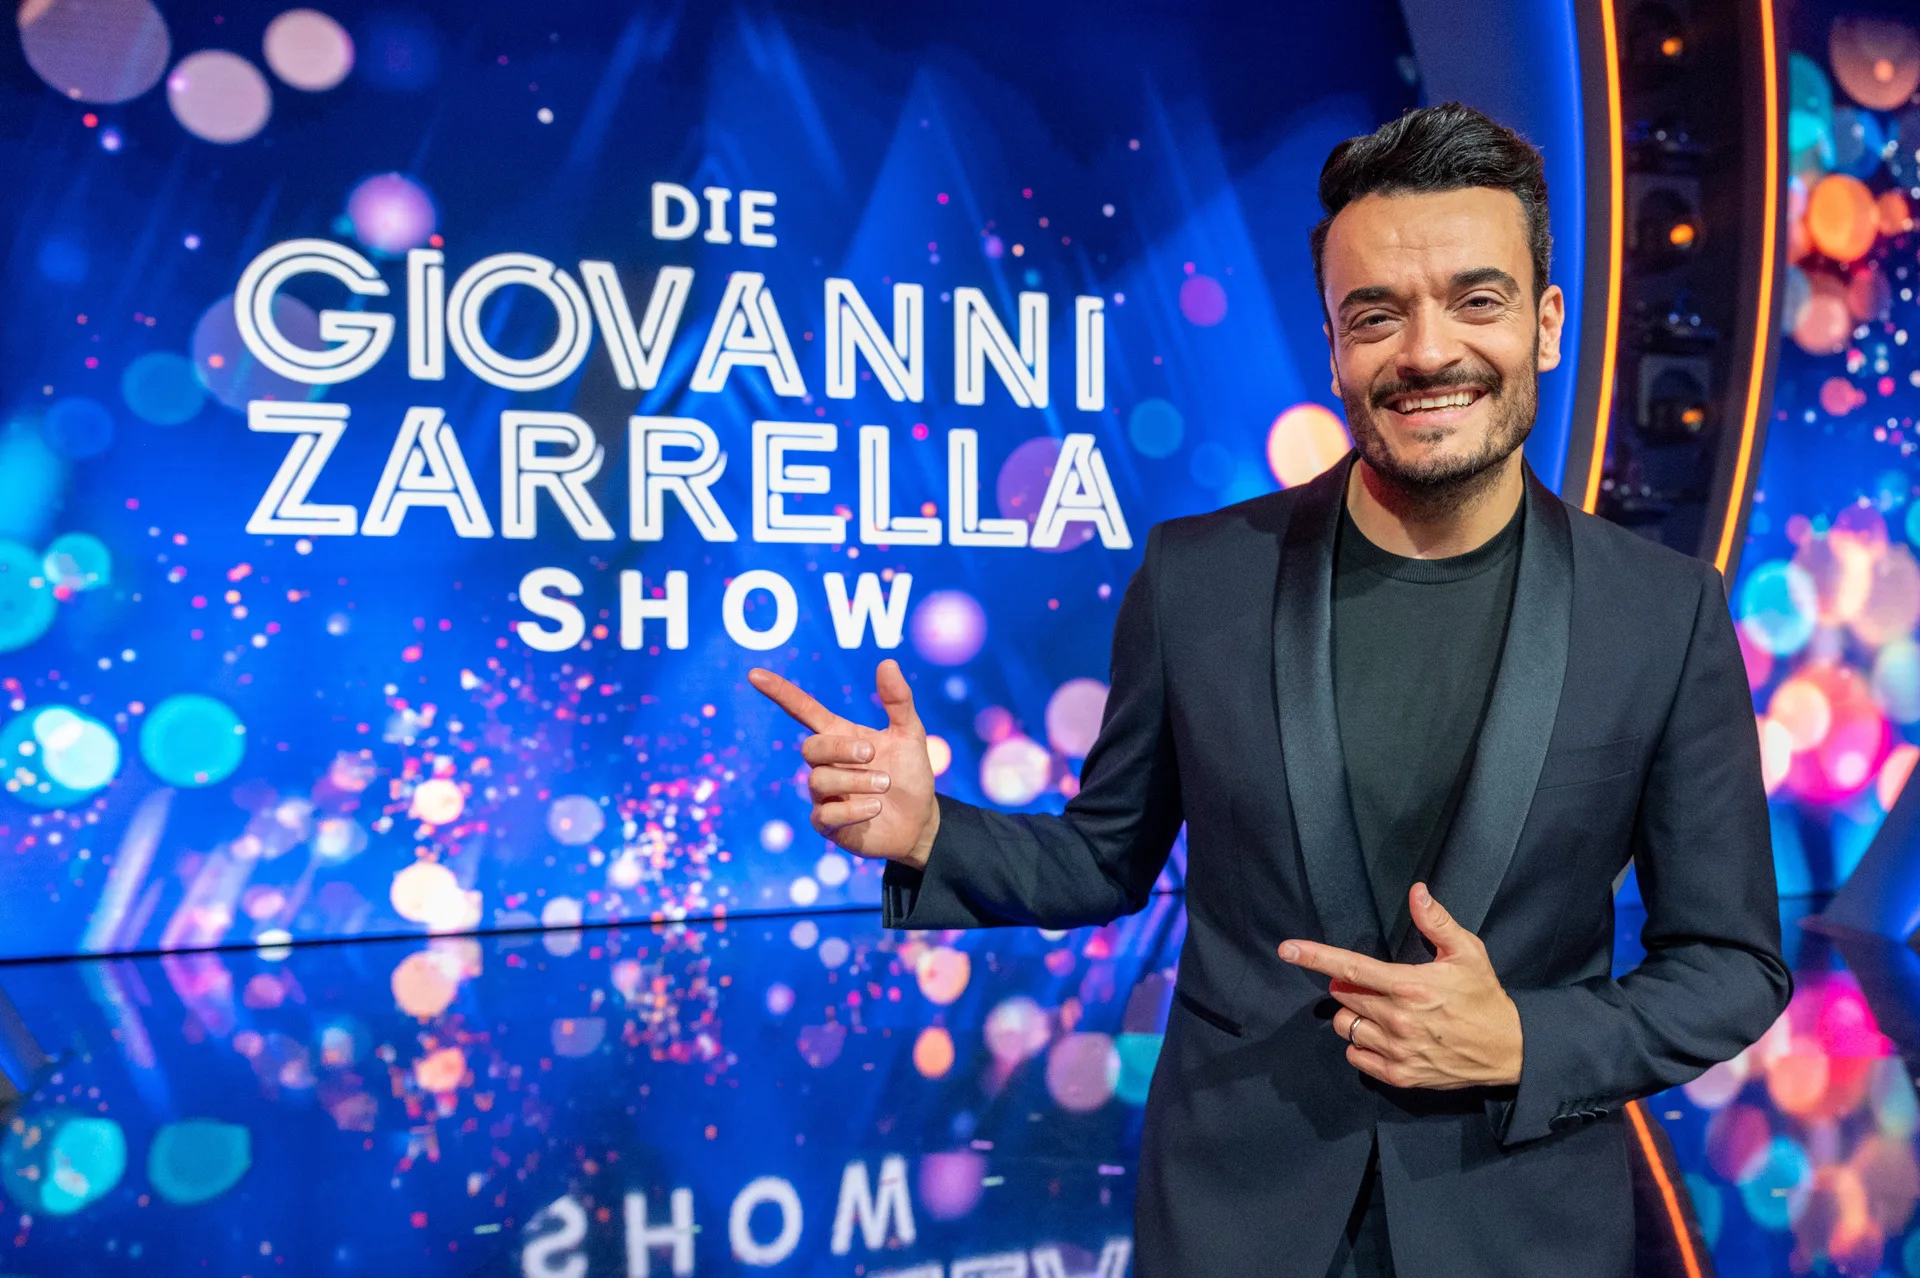 -Giovanni-Zarrella-Show-am-22-Juli-2023-live-im-ZDF-diese-G-ste-Stars-k-nnten-dabei-sein-